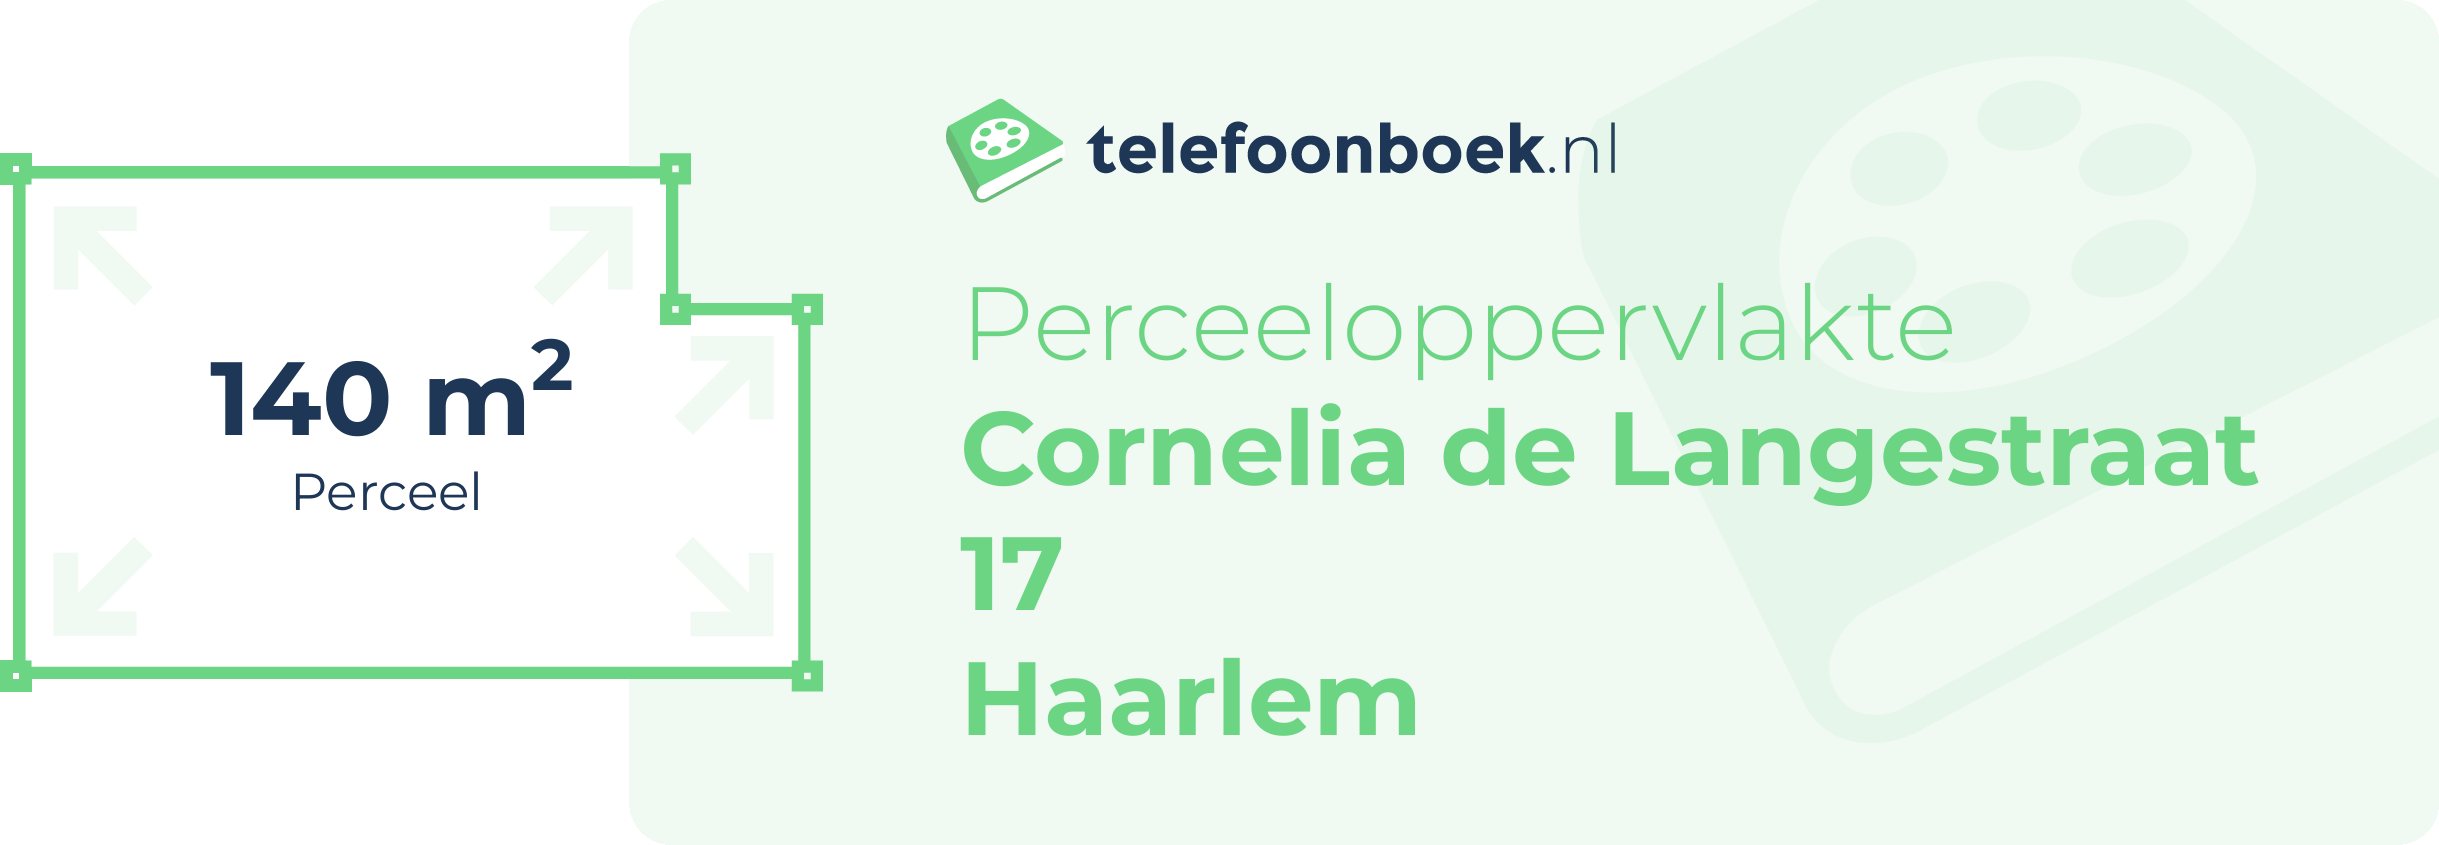 Perceeloppervlakte Cornelia De Langestraat 17 Haarlem